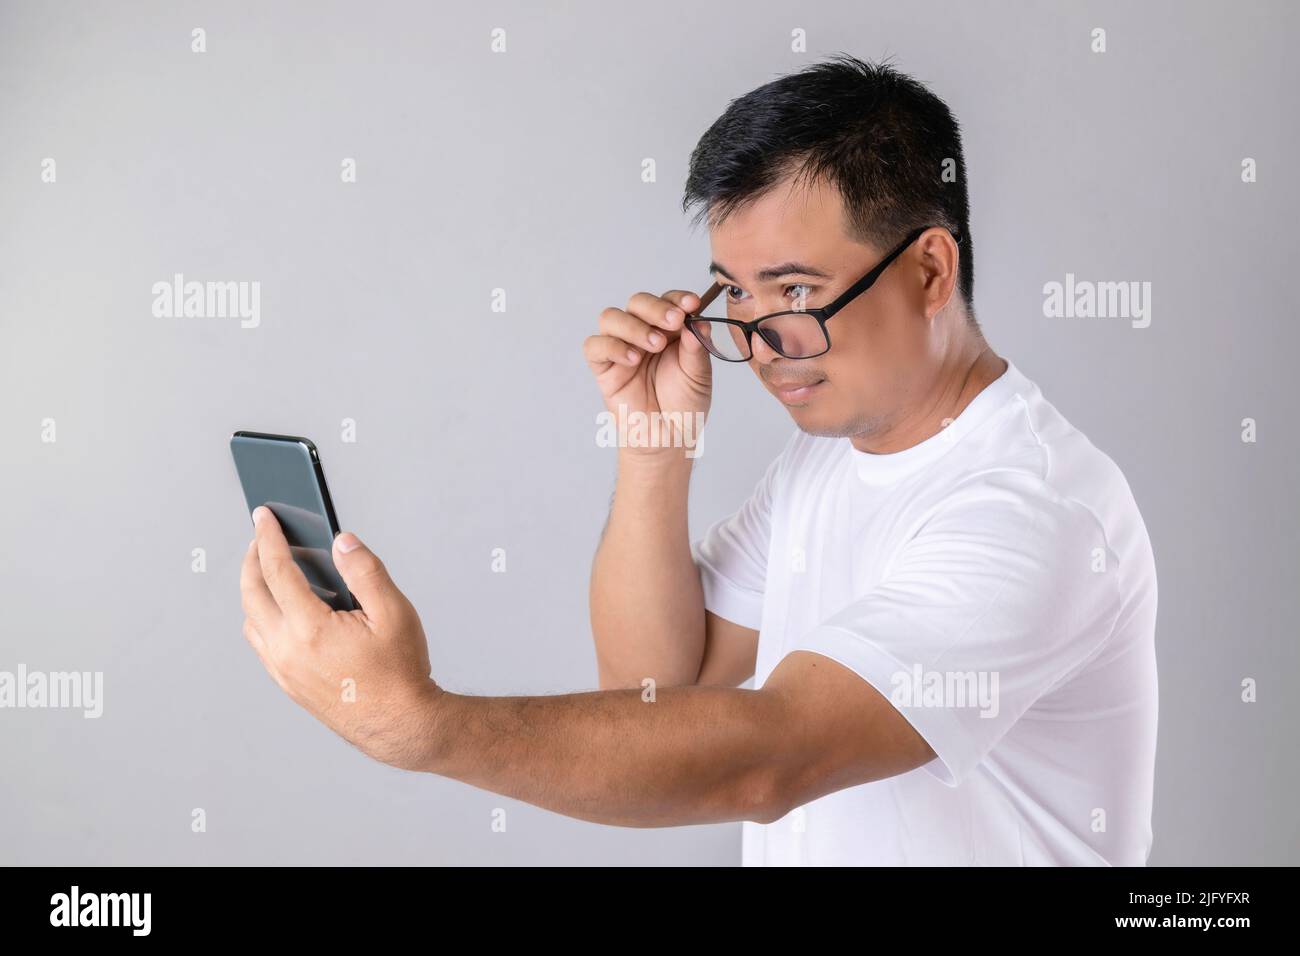 Kurz- oder Weitblick Konzept : Mann wering Brillen und versuchen, klar auf dem Smartphone im Studio auf grauem Hintergrund aufgenommen aussehen Stockfoto